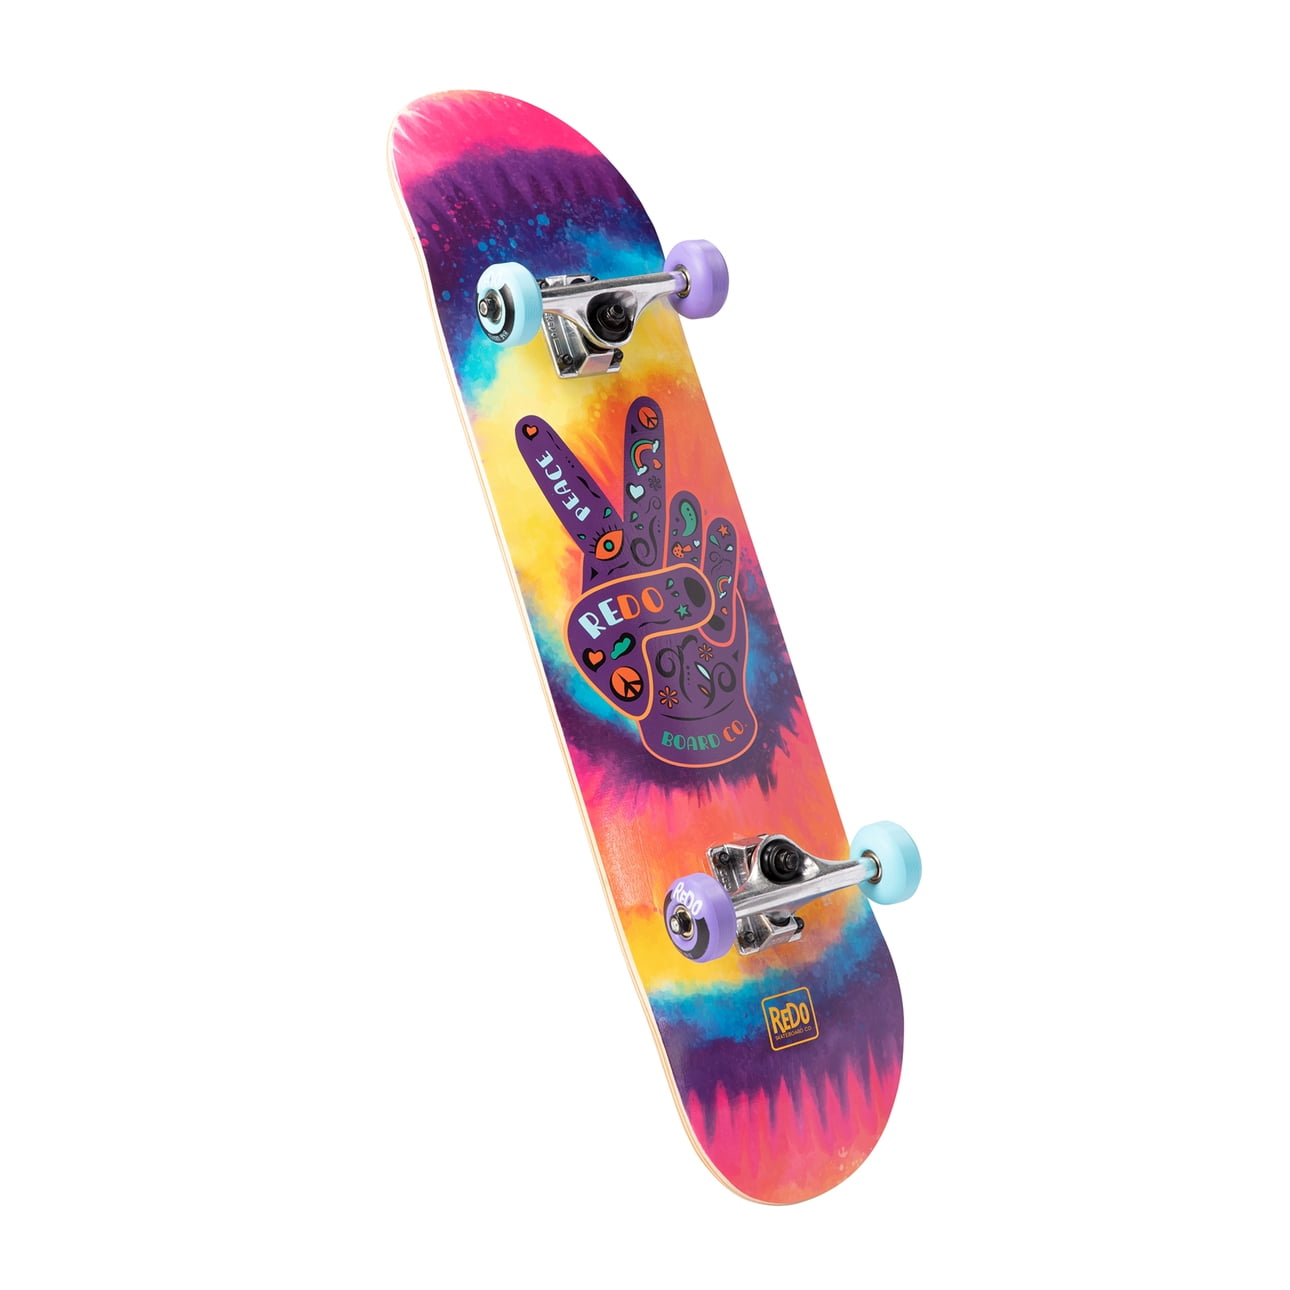 ReDo Skateboard 31" x 7.75" Gallery Pop Complete Skateboard Board Peace for Girls, Kids - Walmart.com